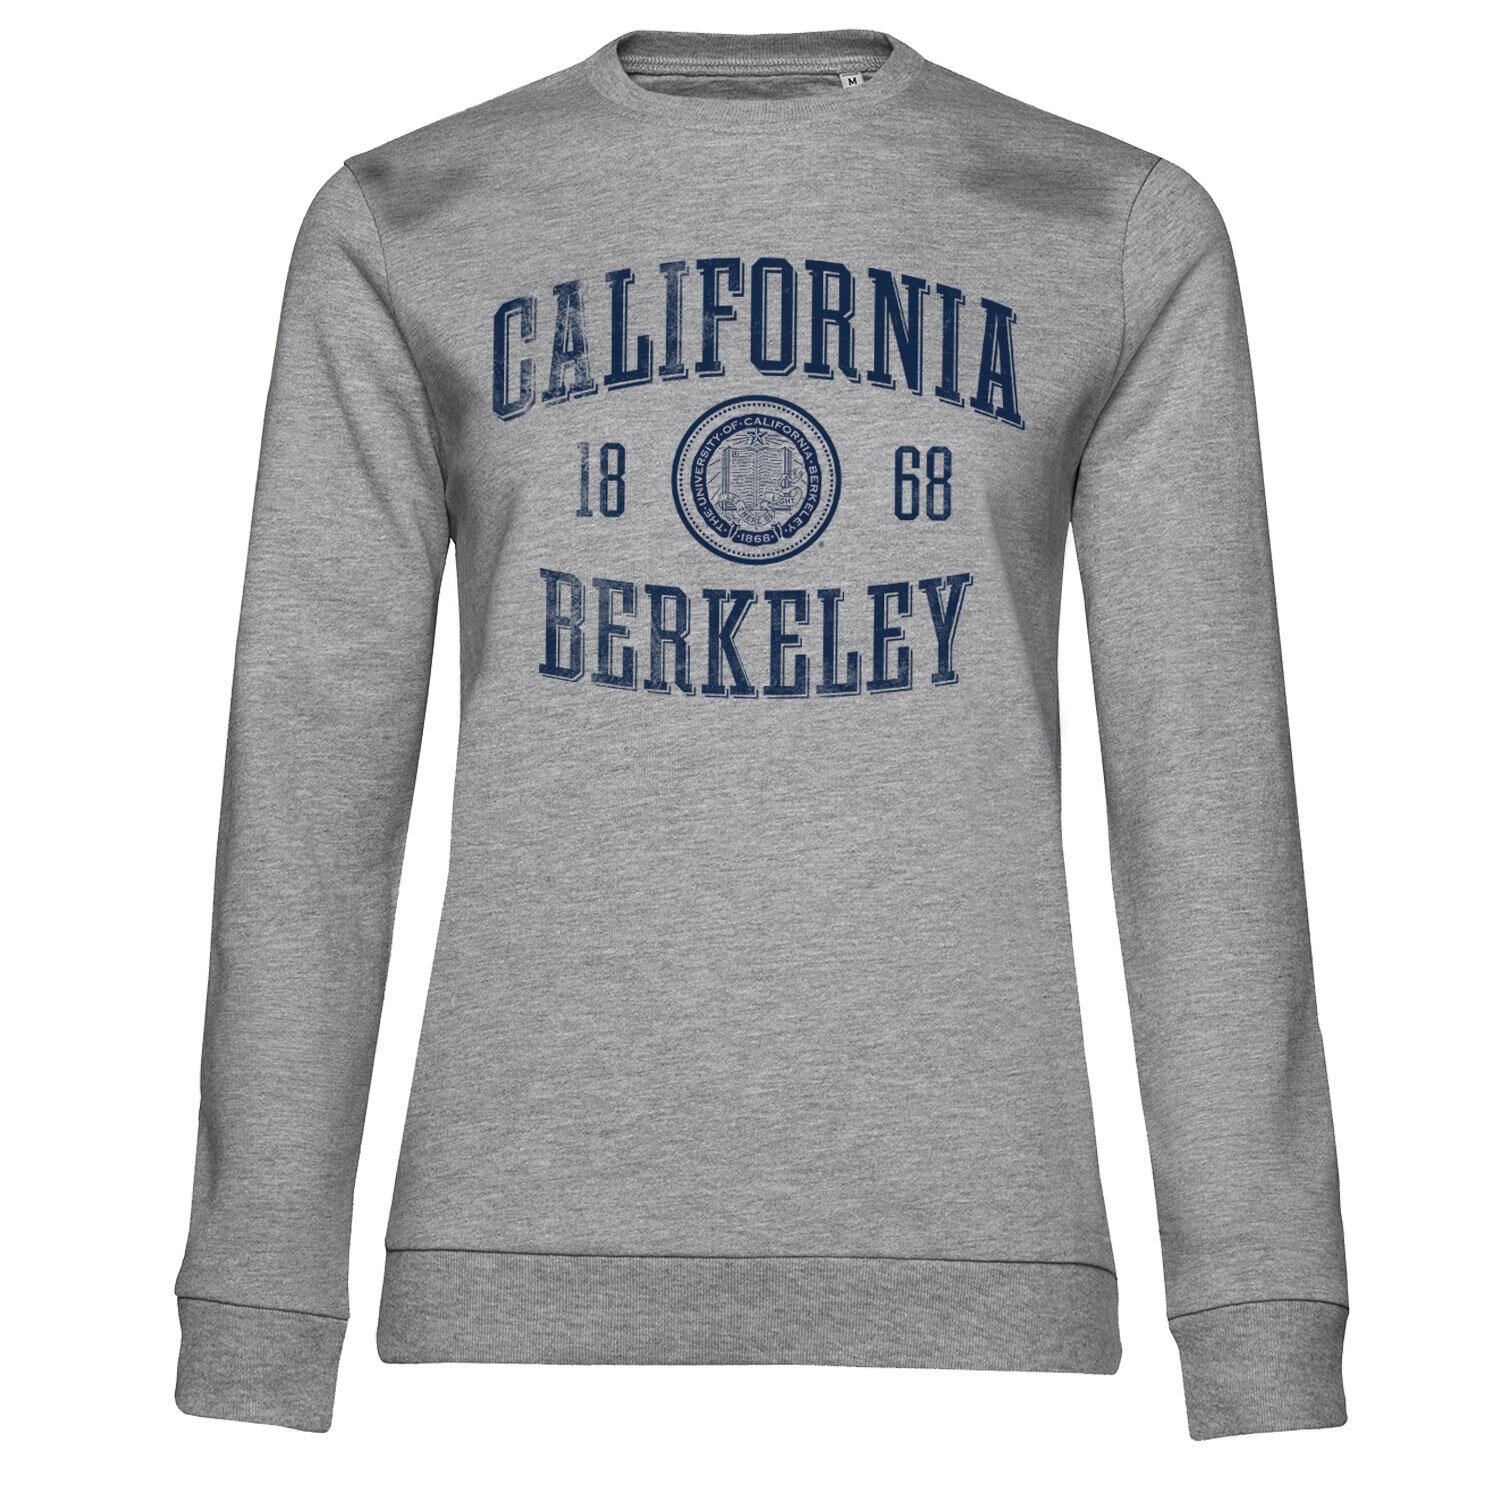 UC Berkeley Washed Seal Girly Sweatshirt